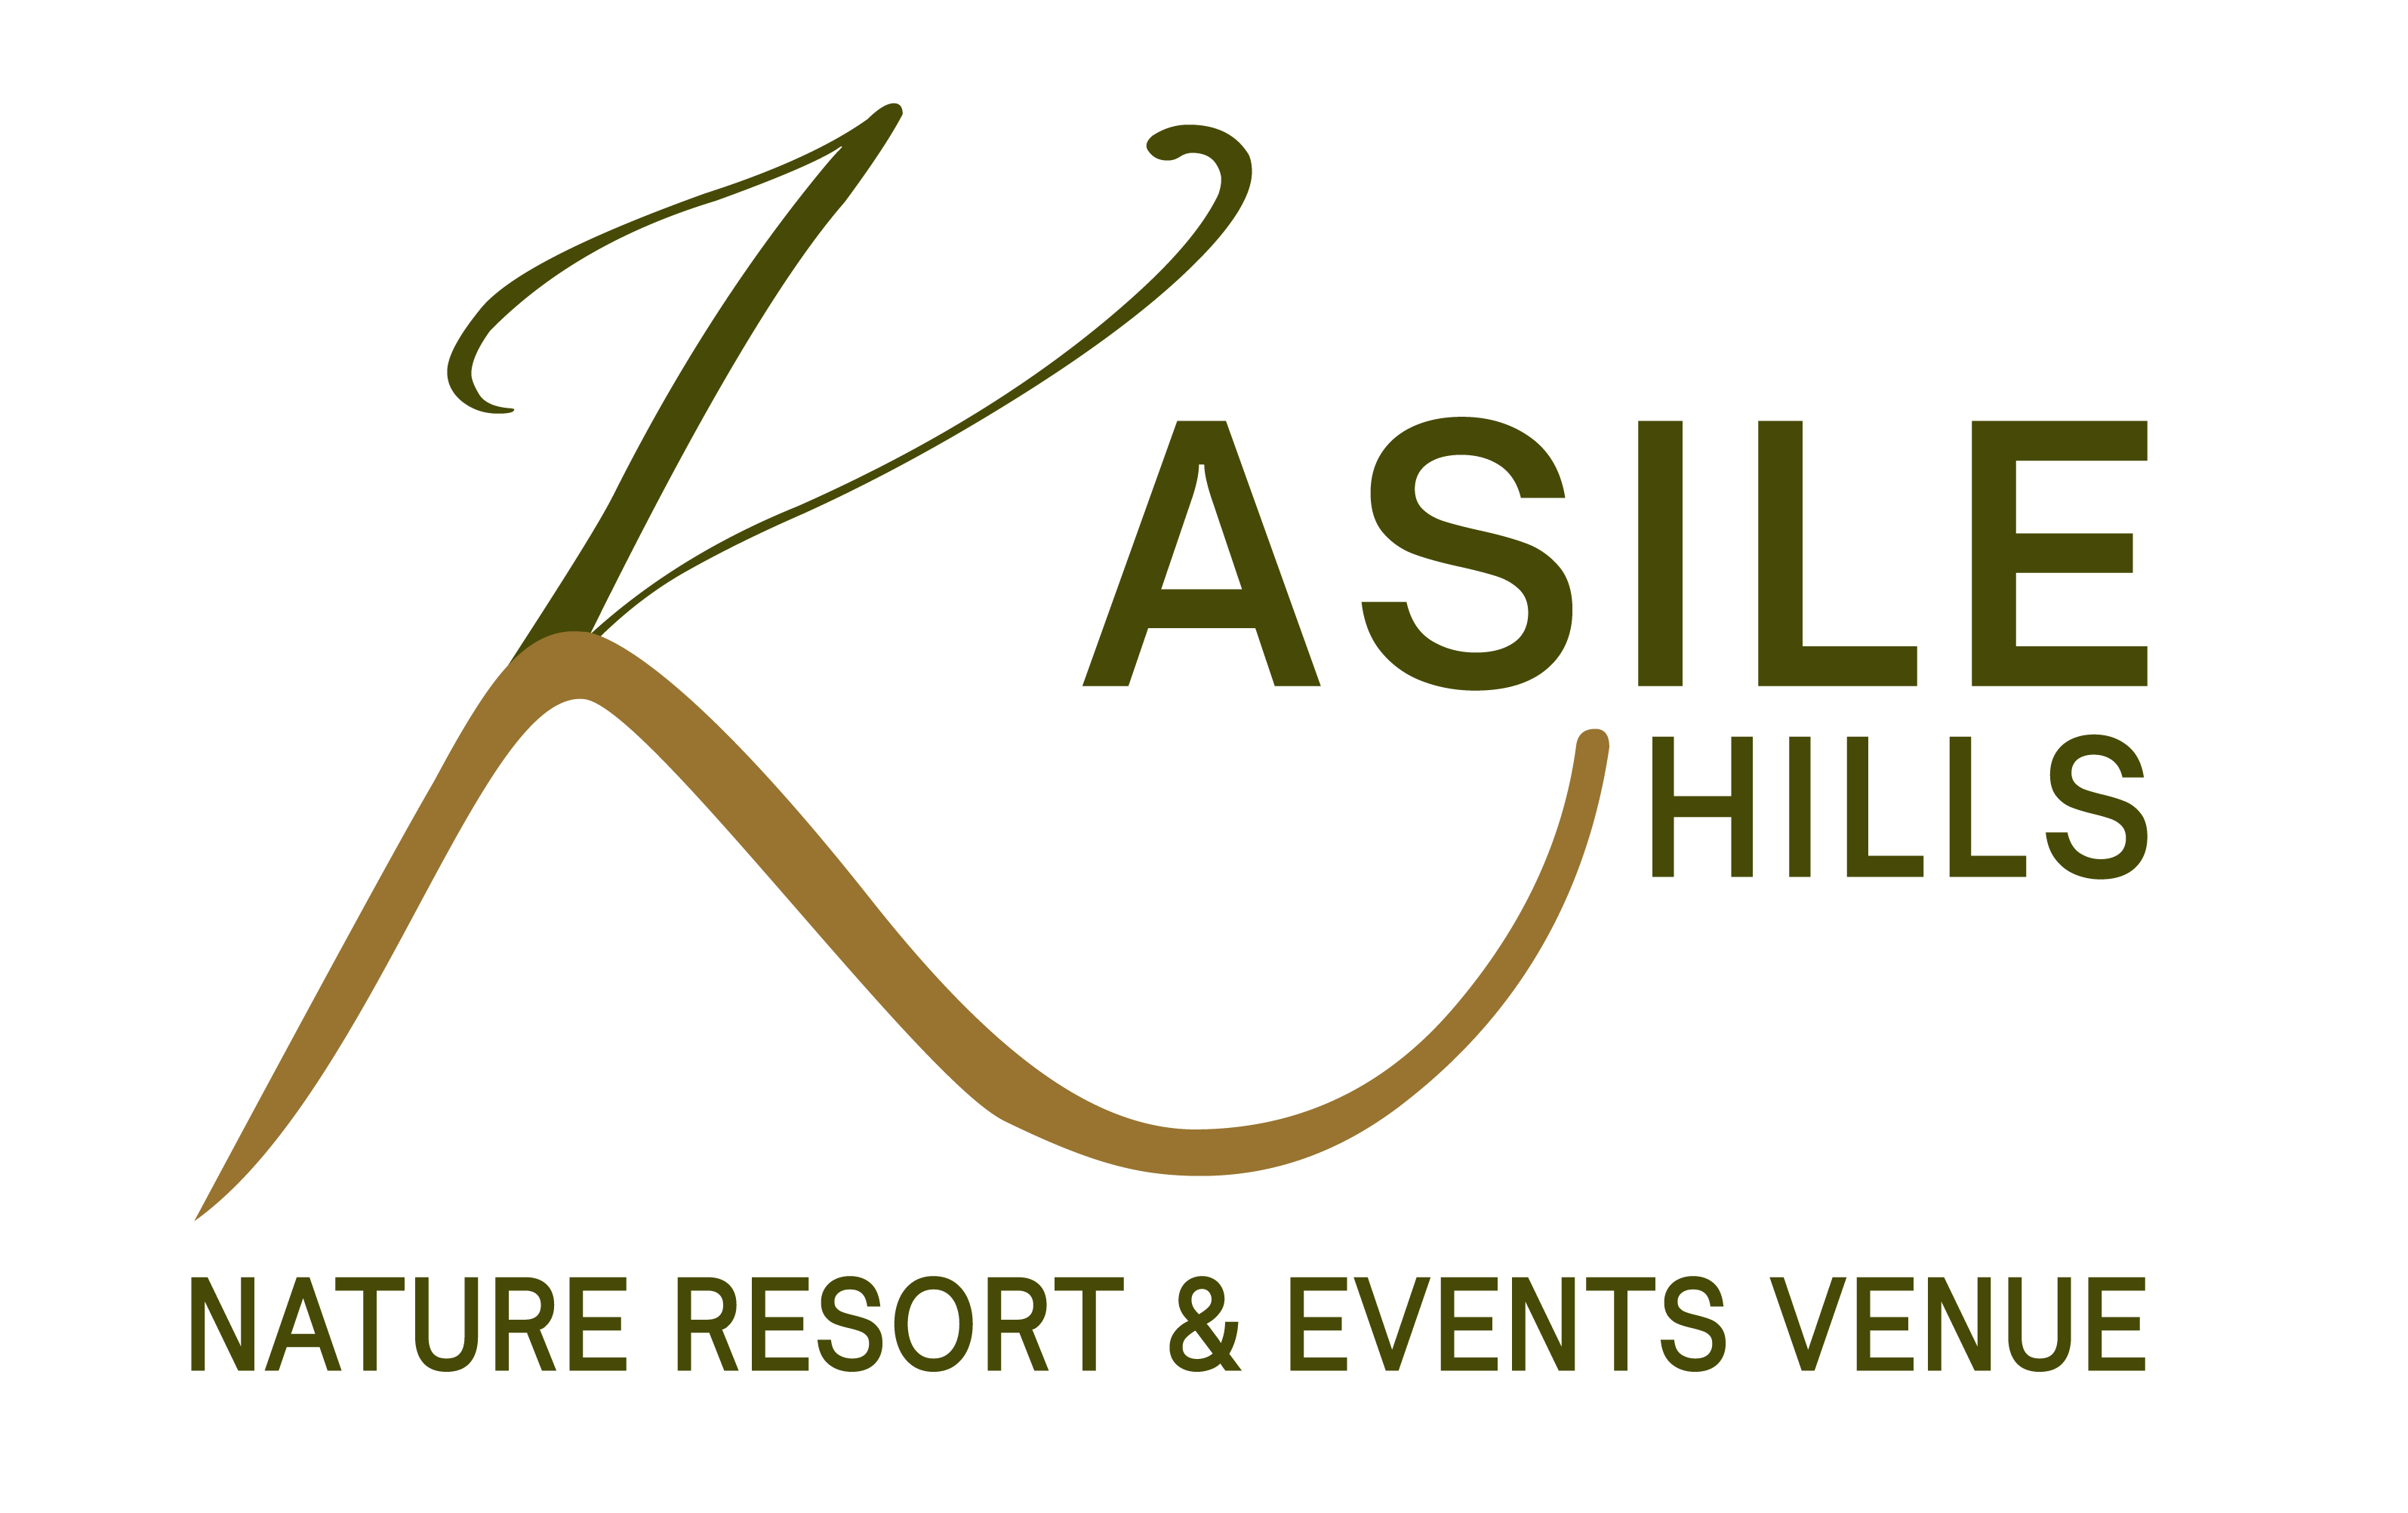 Kasile Hills Nature Resort & Events Venue